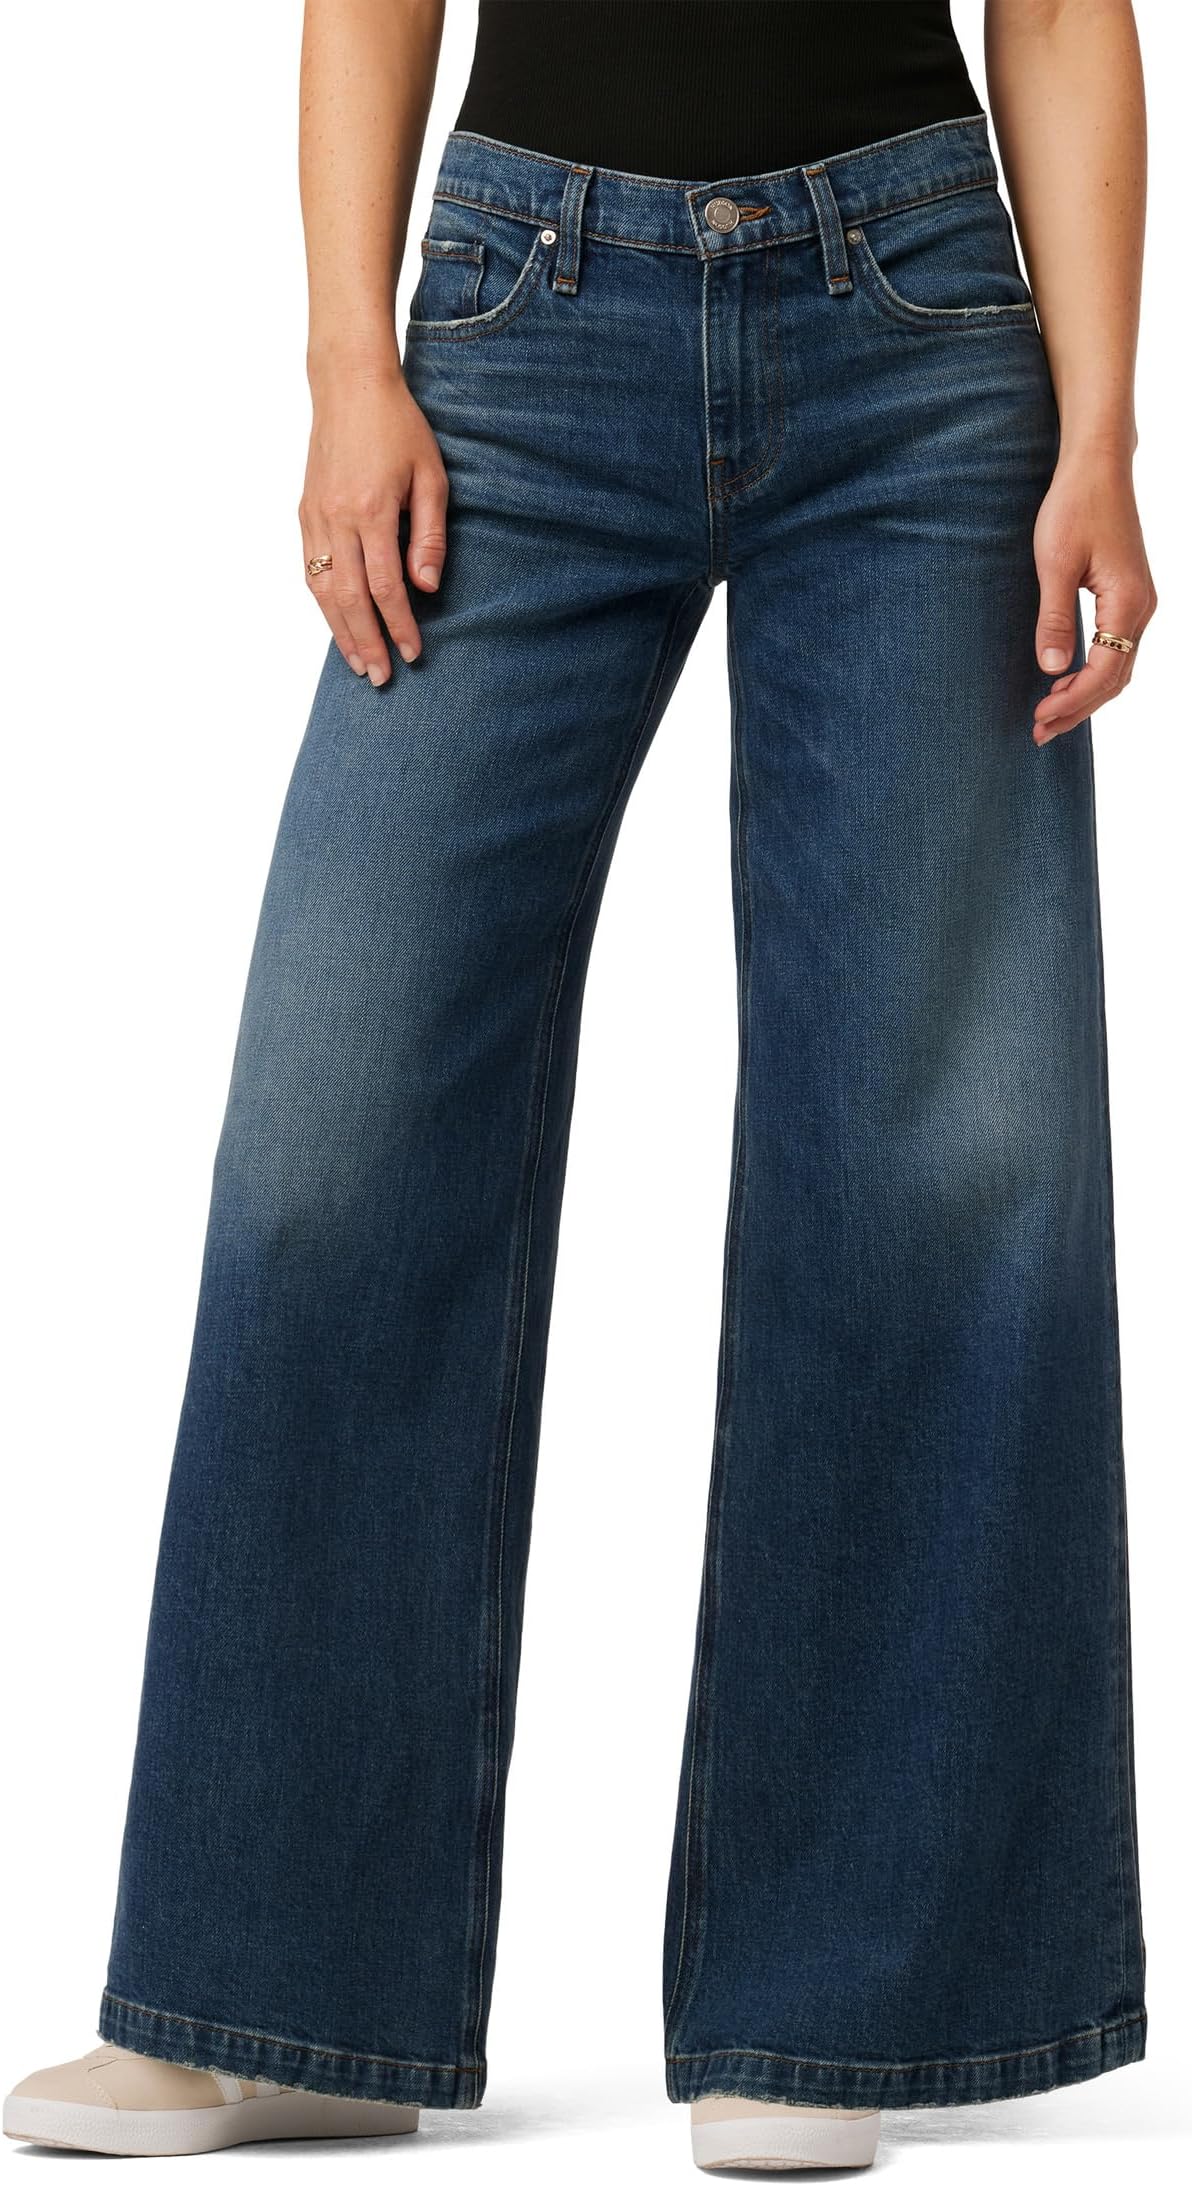 Джинсы Freya Mid-Rise Skater Pants in Deep Blue Vintage Hudson Jeans, цвет Deep Blue Vintage